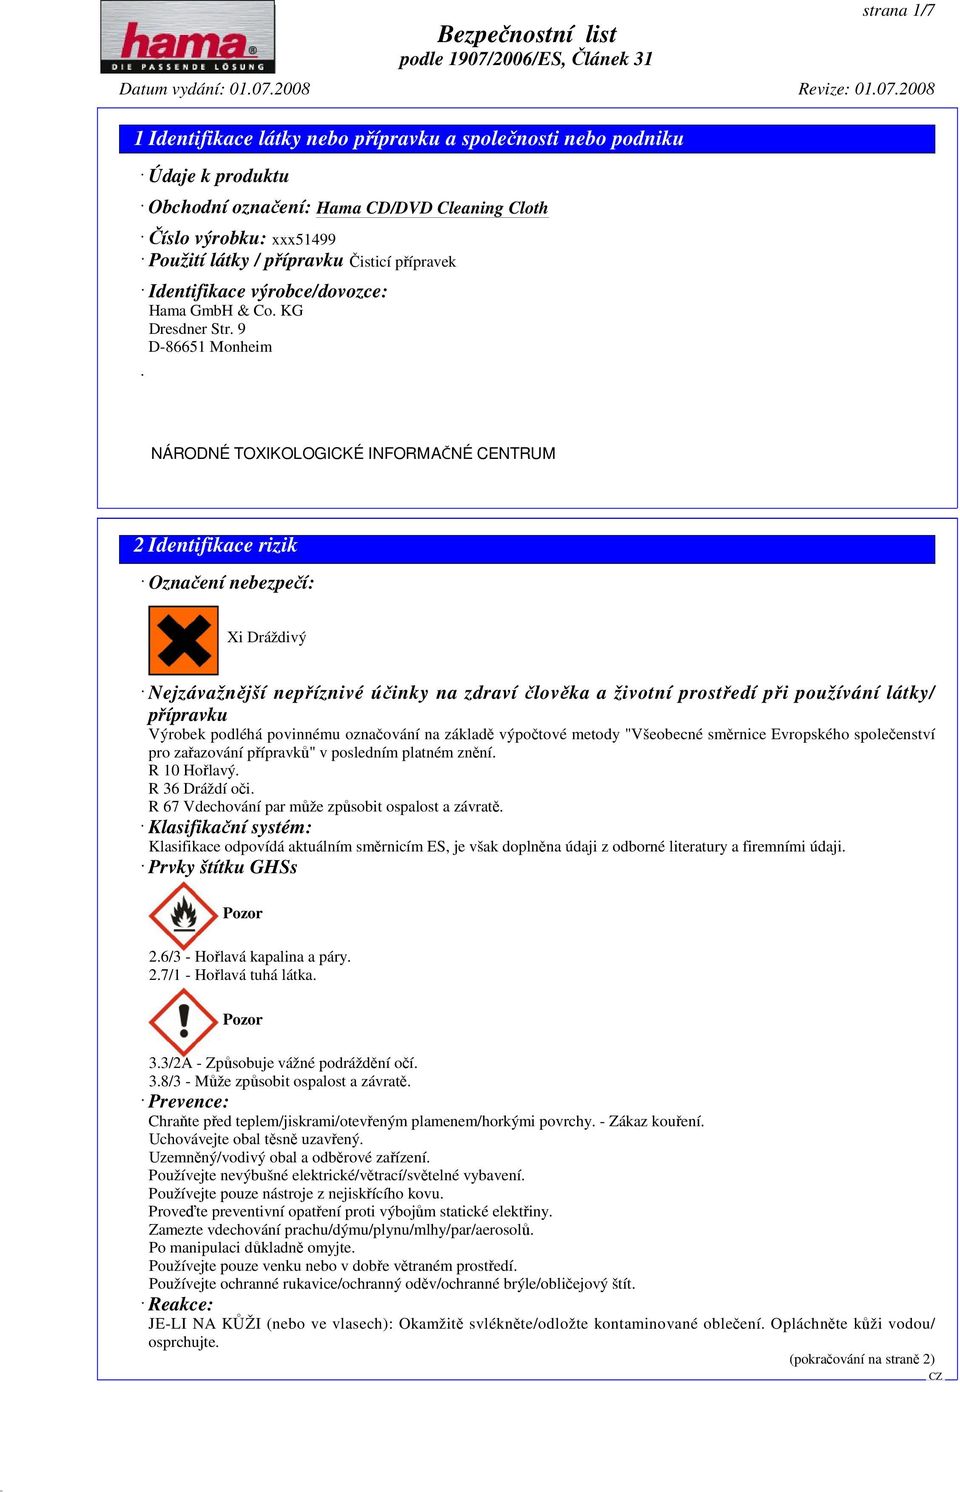 9 D-86651 Monheim č 2 Identifikace rizik Označení nebezpečí: Xi Dráždivý Nejzávažnější nepříznivé účinky na zdraví člověka a životní prostředí při používání látky/ přípravku Výrobek podléhá povinnému